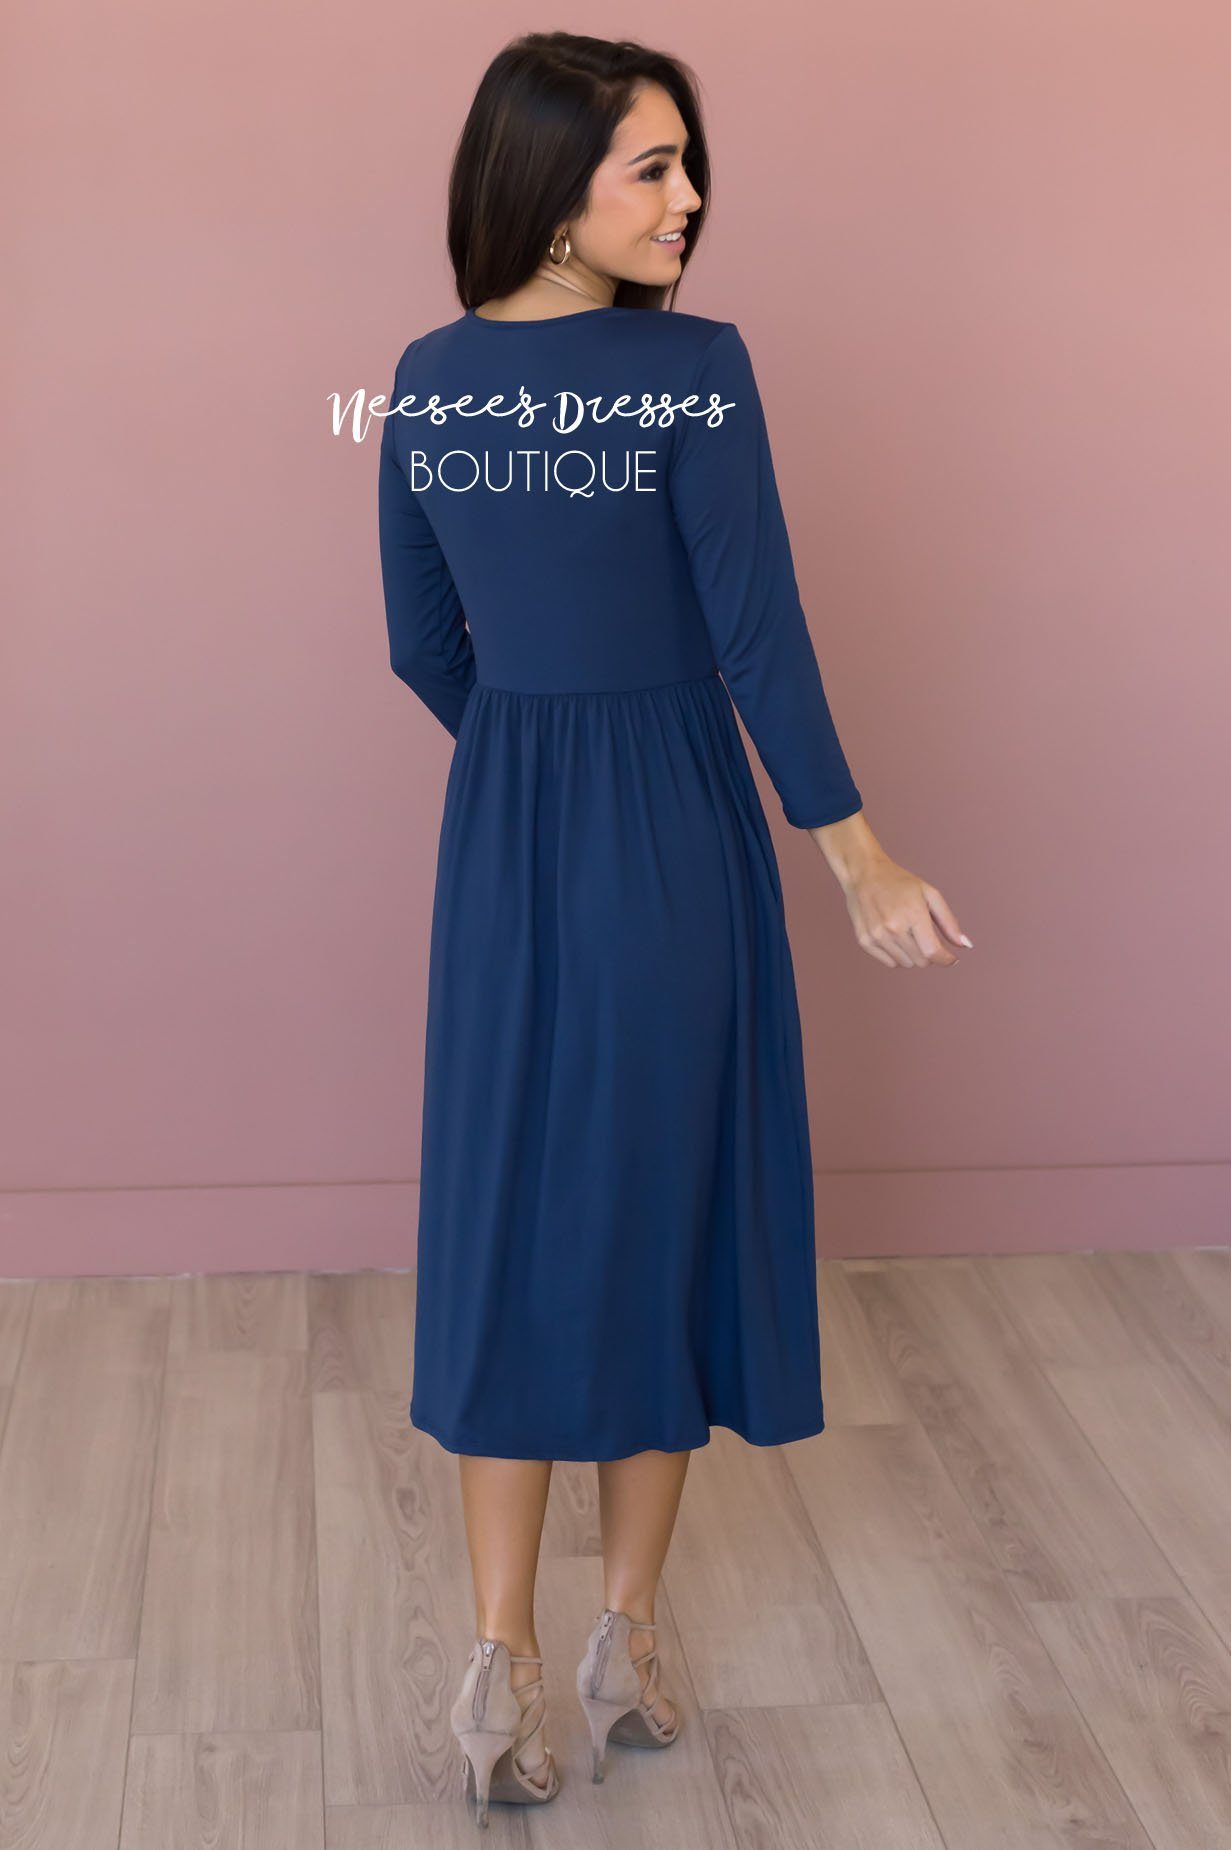 The Brandi Modest Mid-Length Dress - NeeSee's Dresses